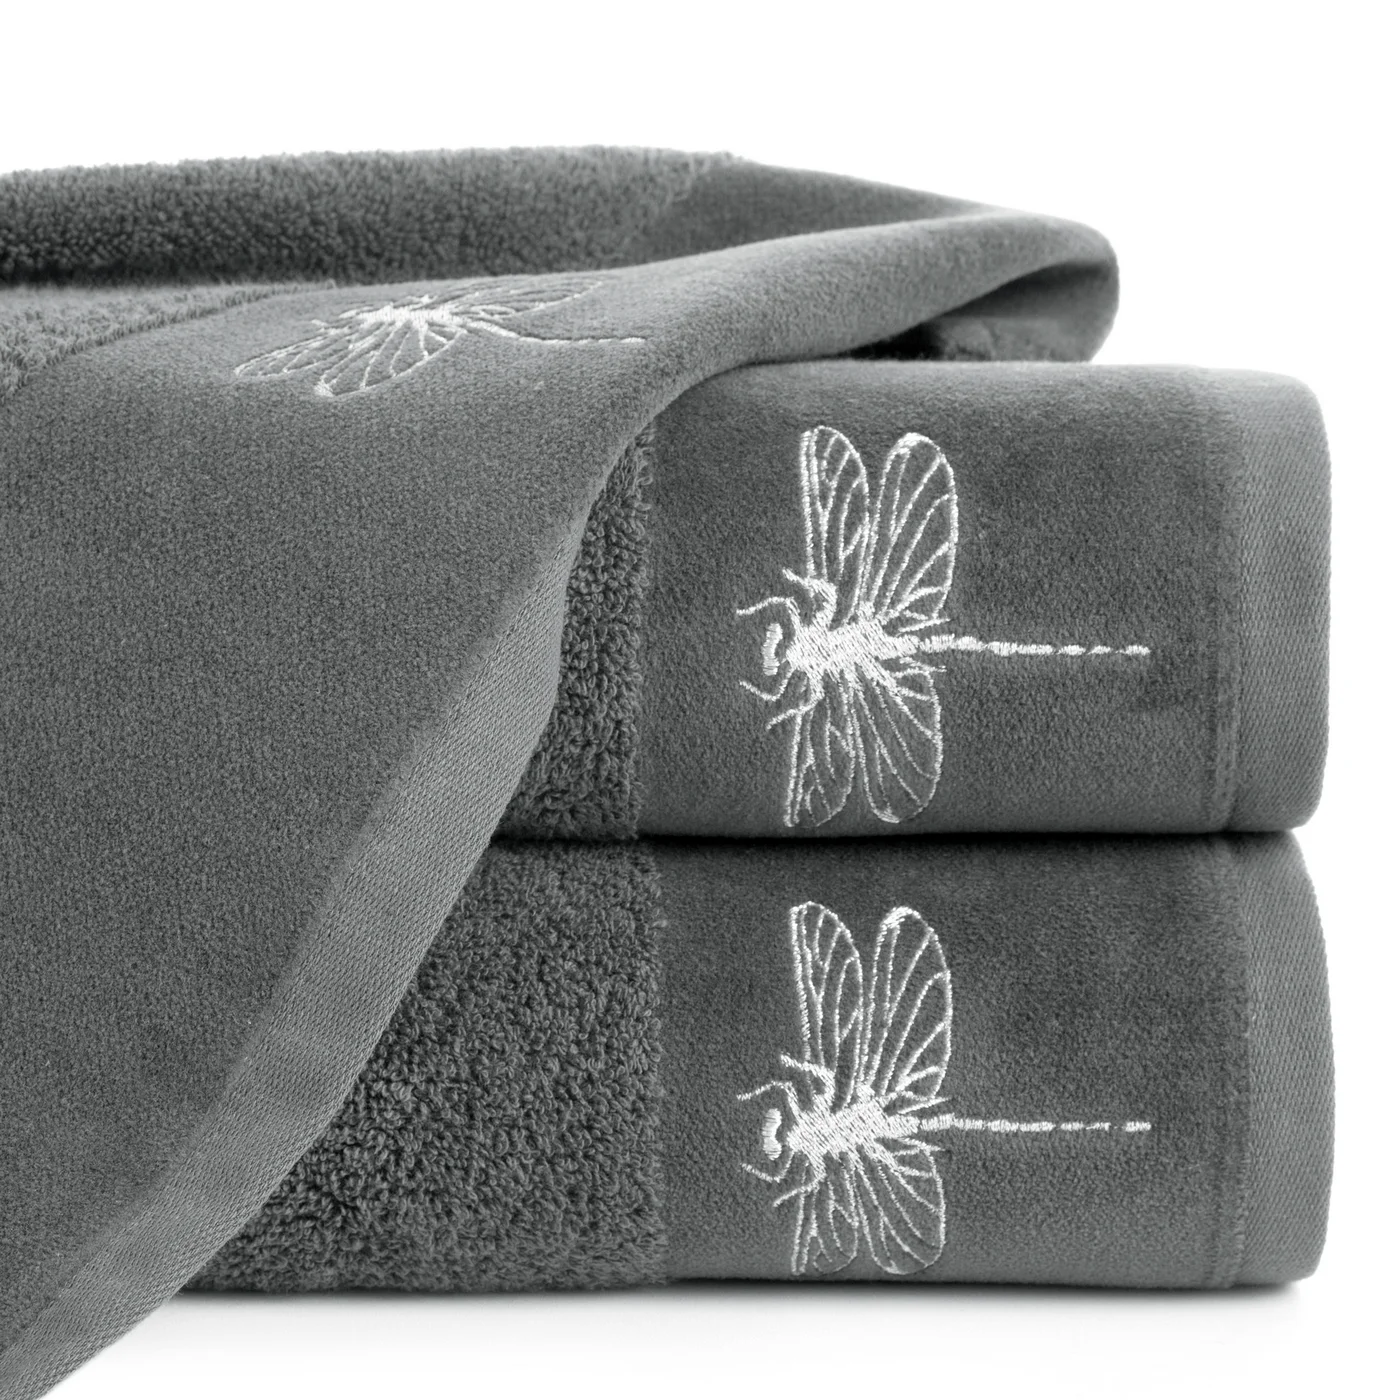 Ręcznik z błyszczącym haftem w kształcie ważki na szenilowej bordiurze